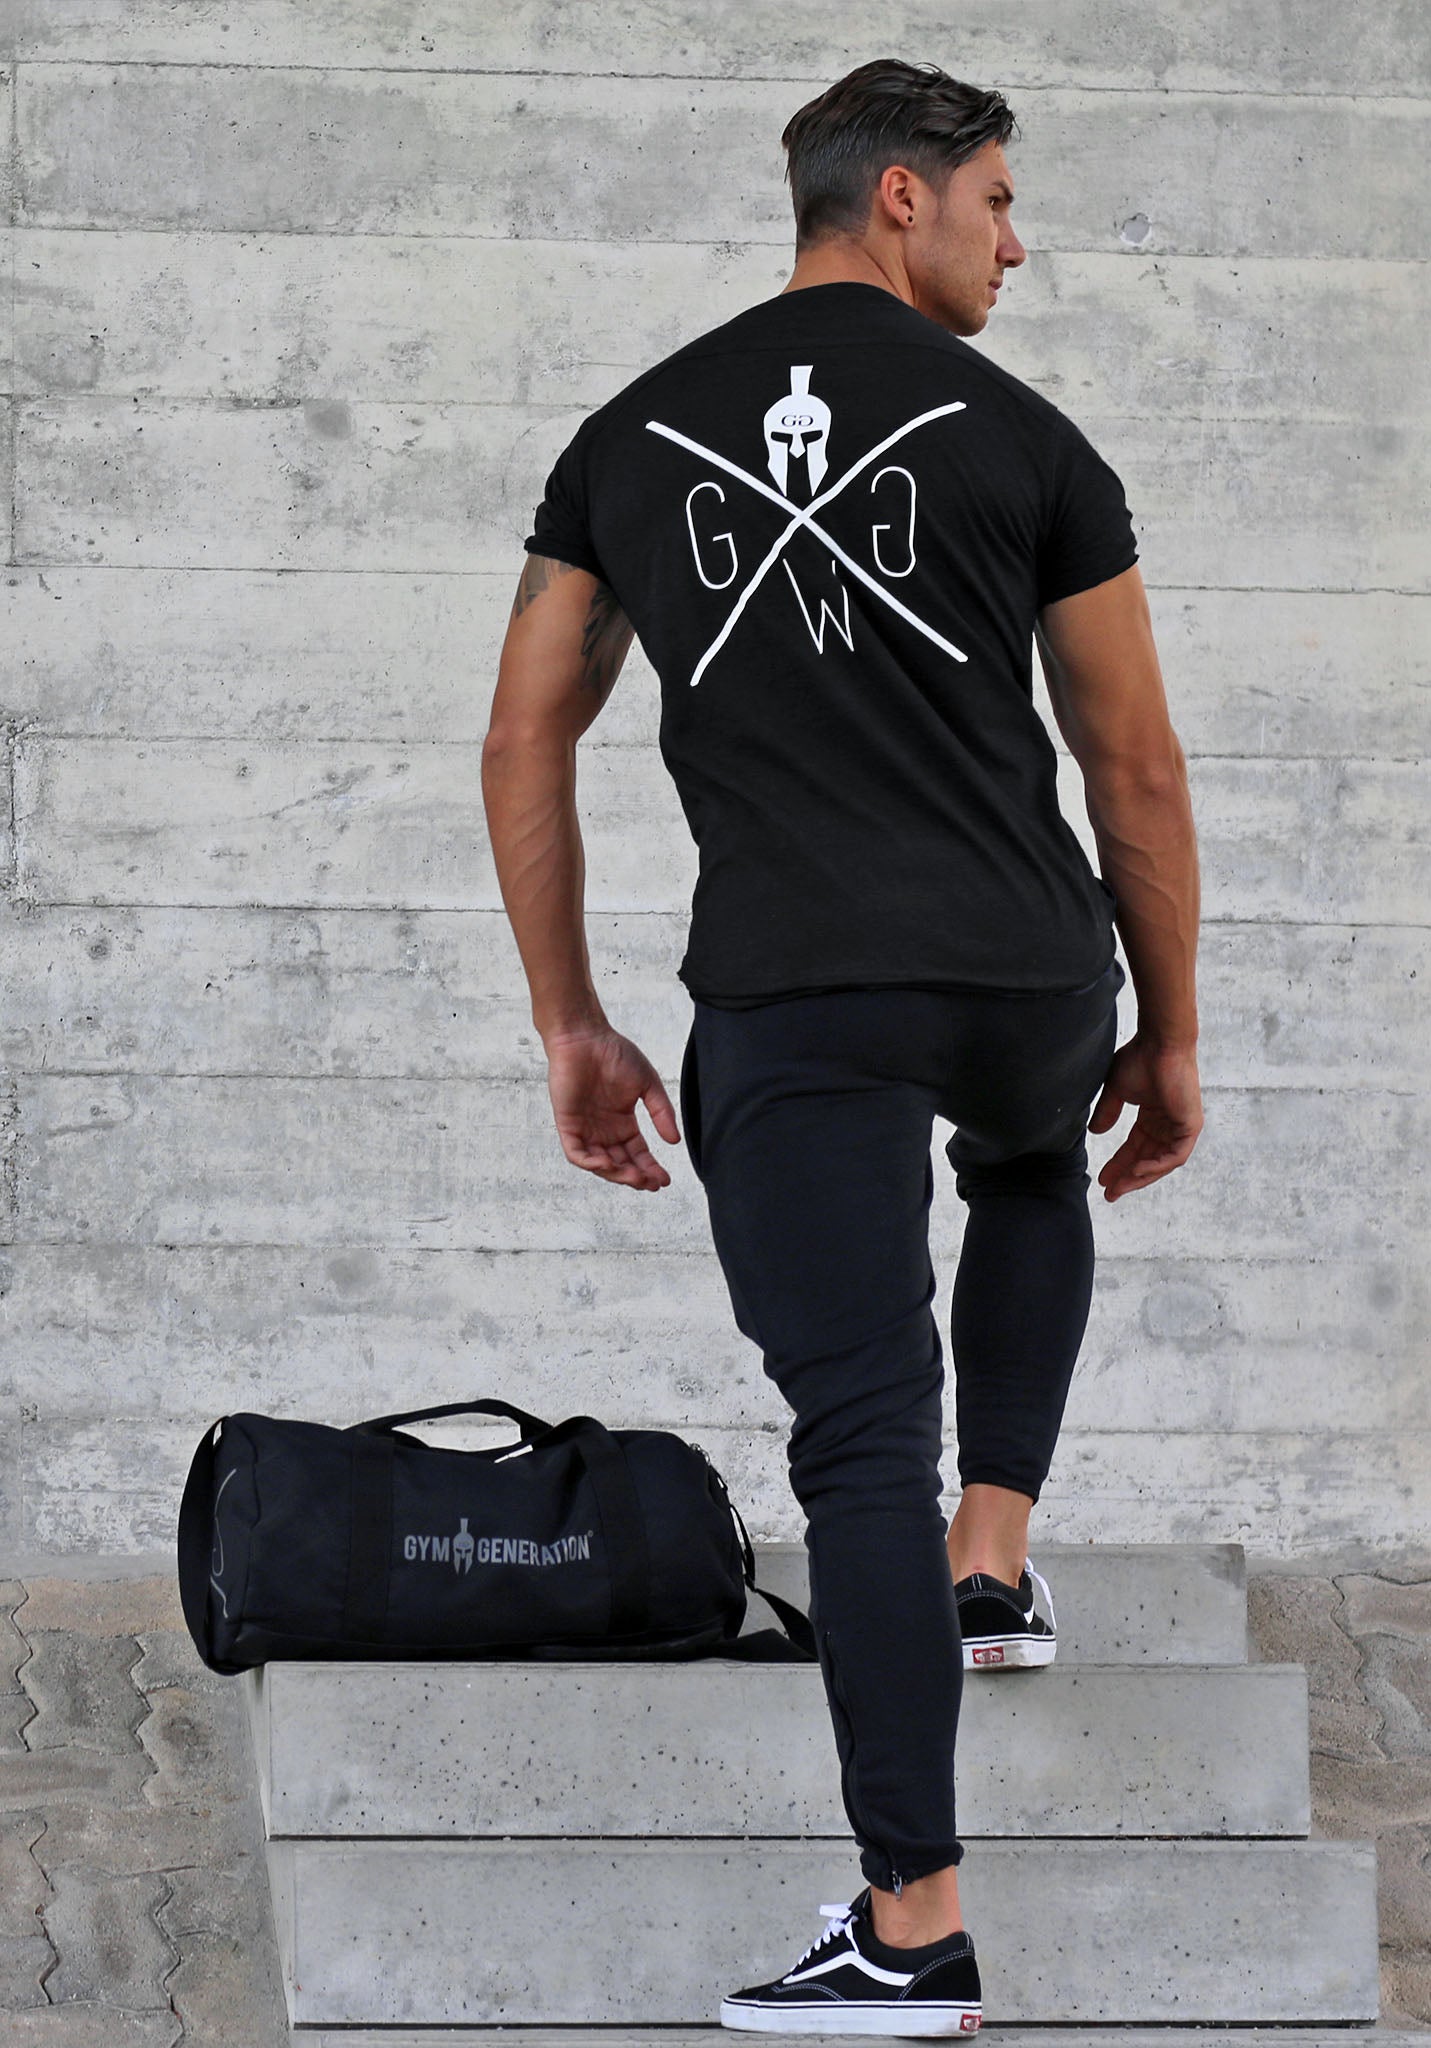 Stilvolles schwarzes Gym T-Shirt aus 100% Baumwolle, ideal für stilbewusste Männer.